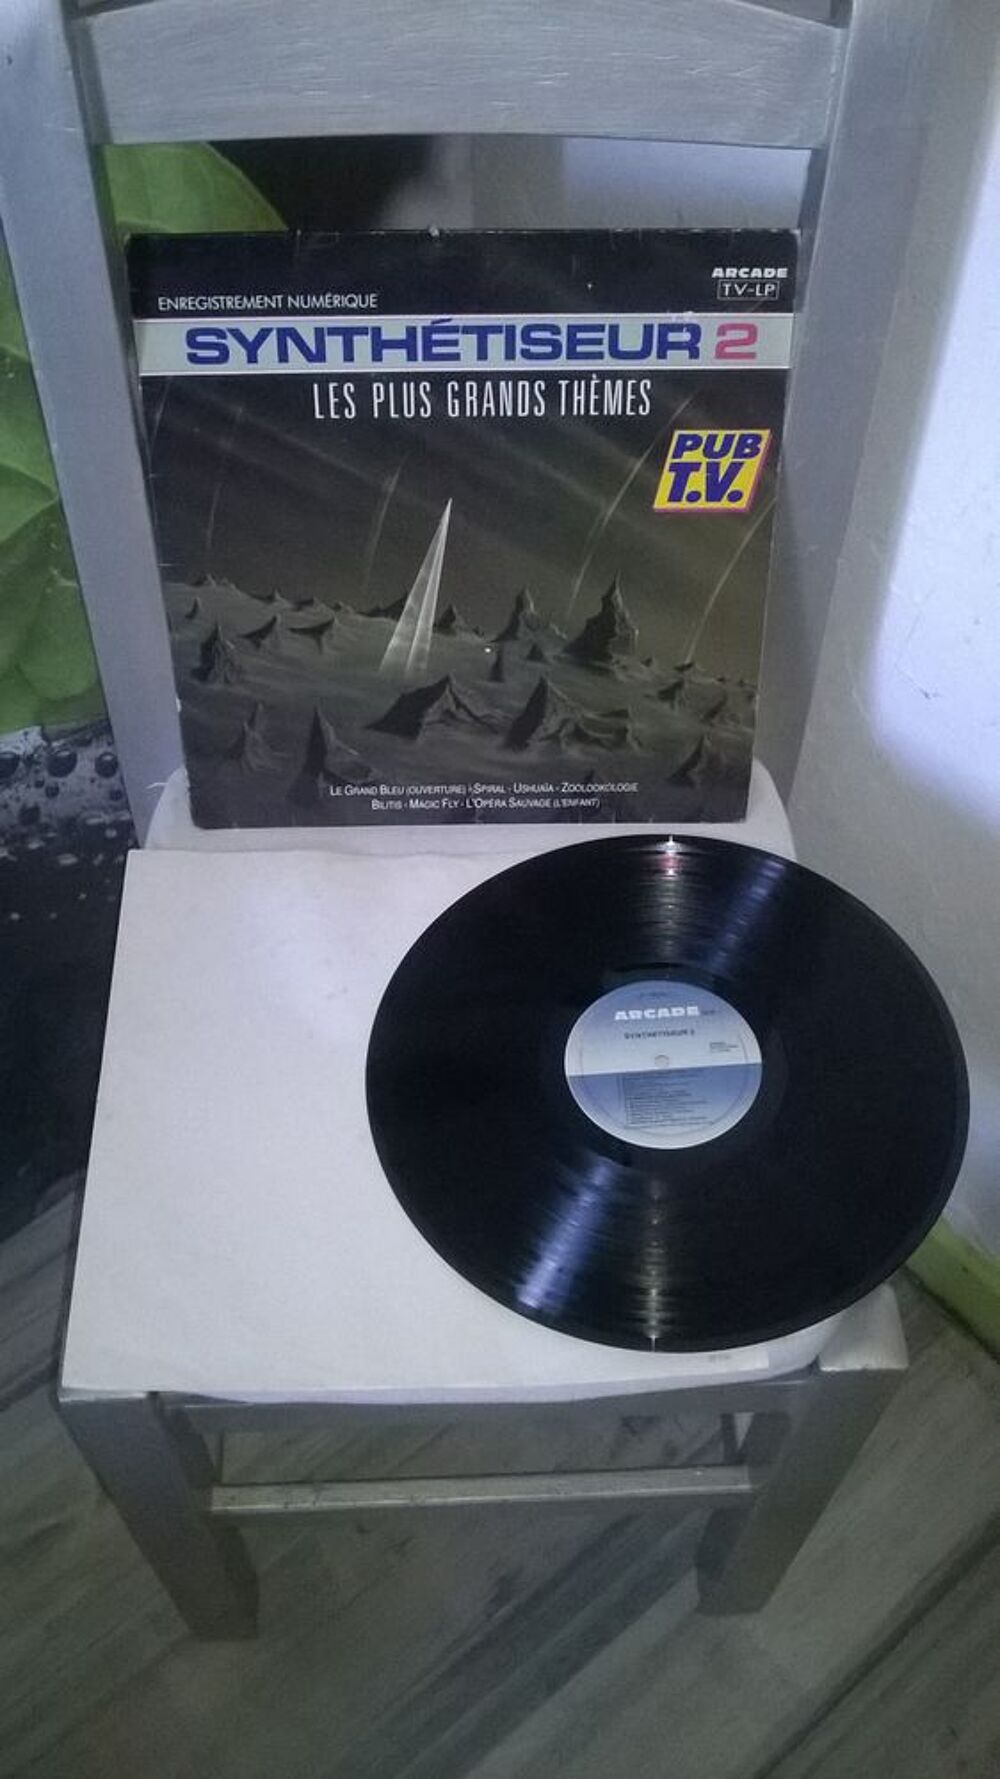 Vinyle Ed Starink
Synth&eacute;tiseur 2 - Les Plus Grands Th&egrave;mes
CD et vinyles